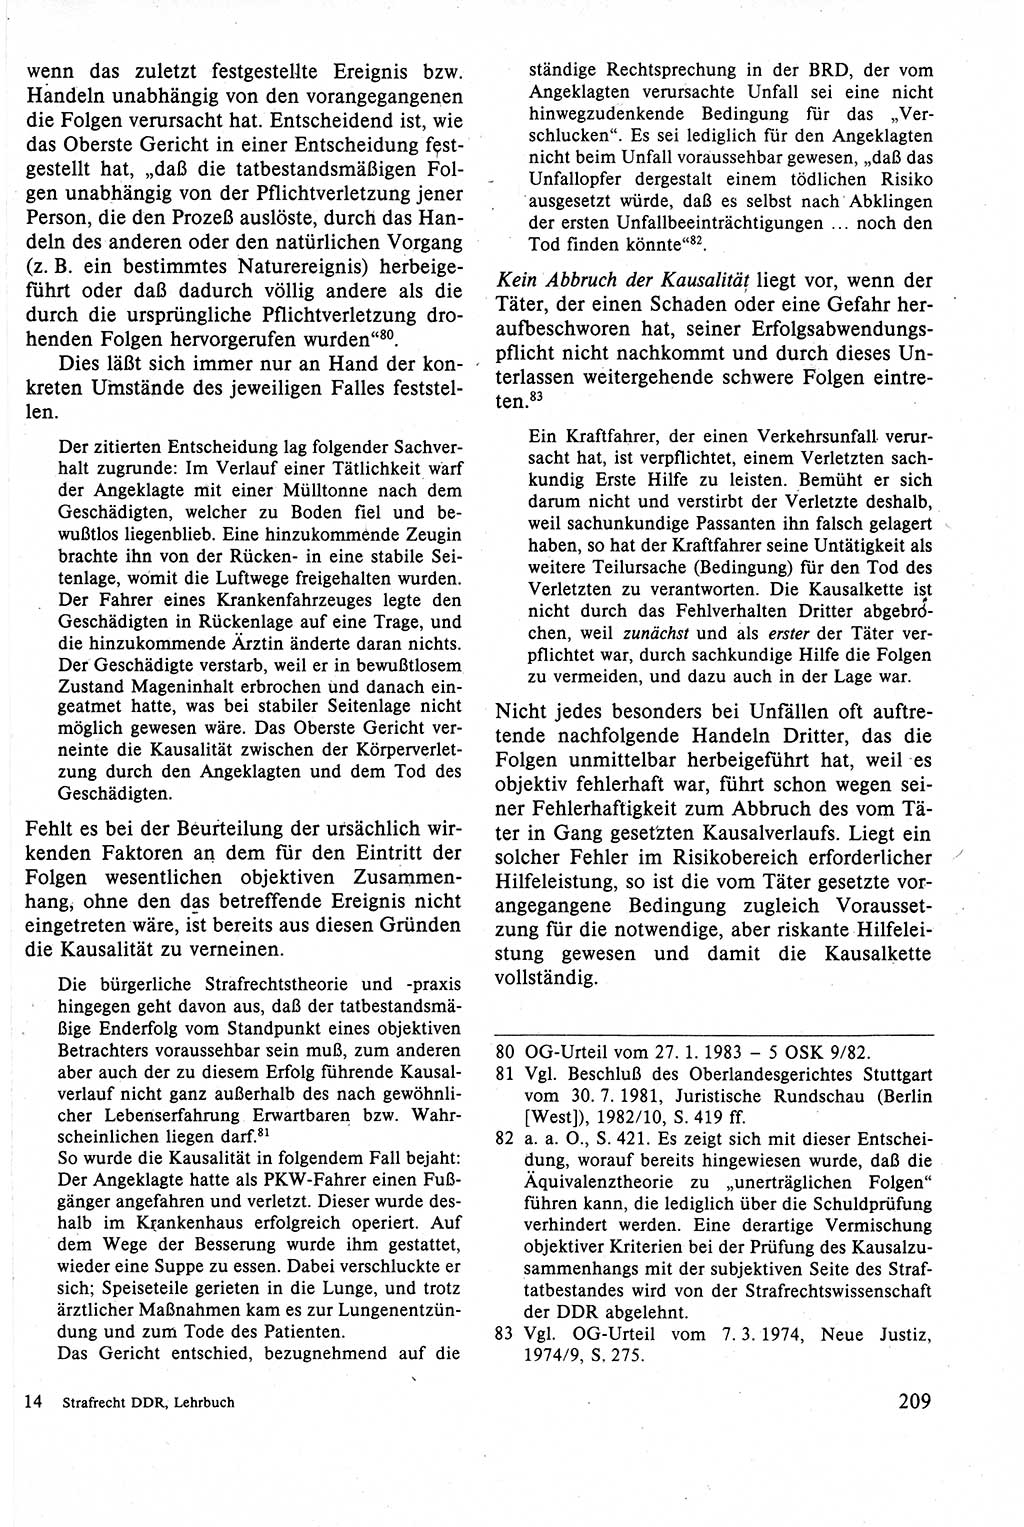 Strafrecht der DDR (Deutsche Demokratische Republik), Lehrbuch 1988, Seite 209 (Strafr. DDR Lb. 1988, S. 209)